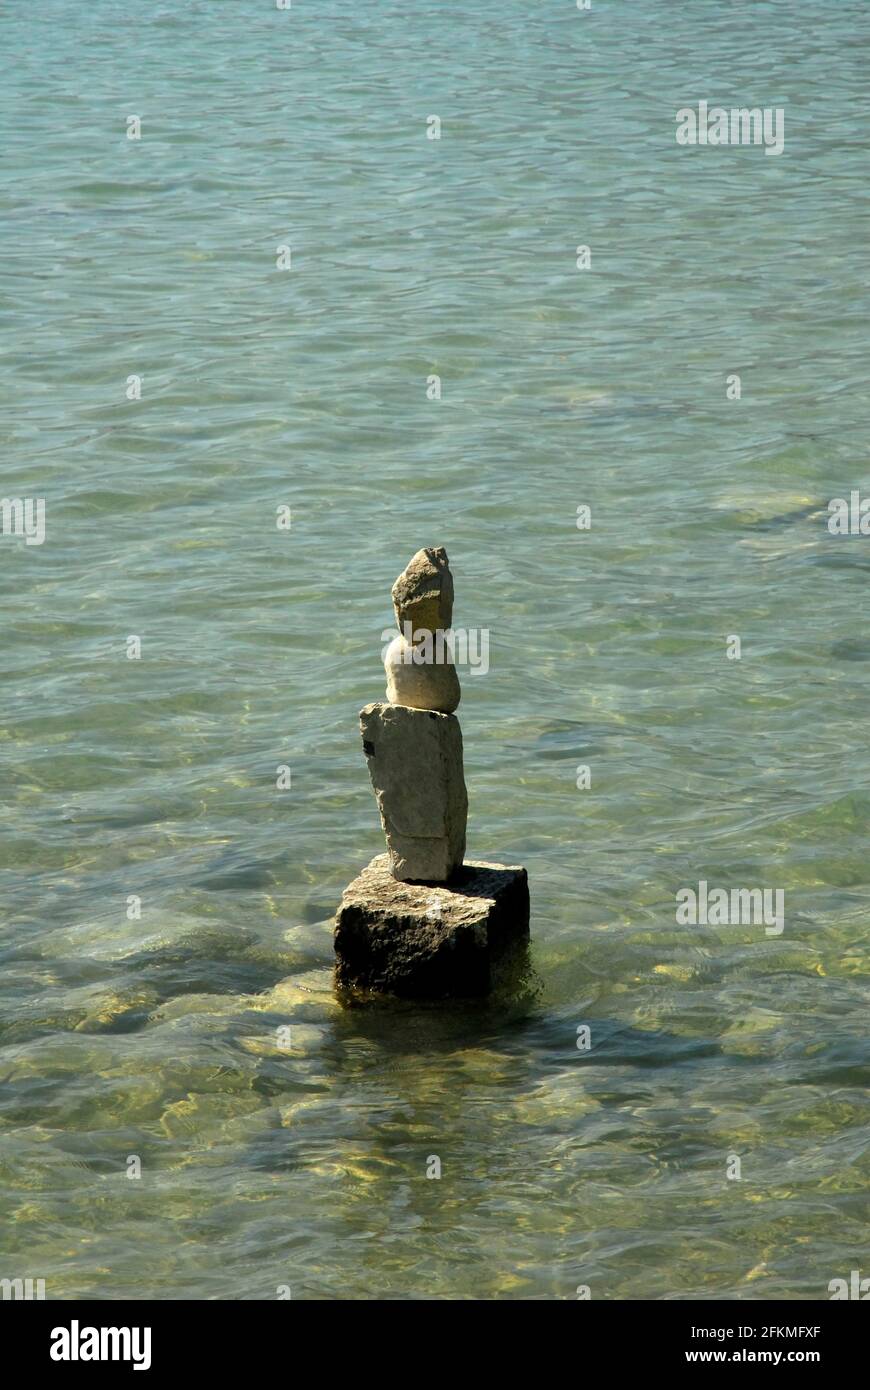 Gestapelte Steine auf See, Gleichgewicht, Gleichgewicht, Gleichgewicht Stockfoto